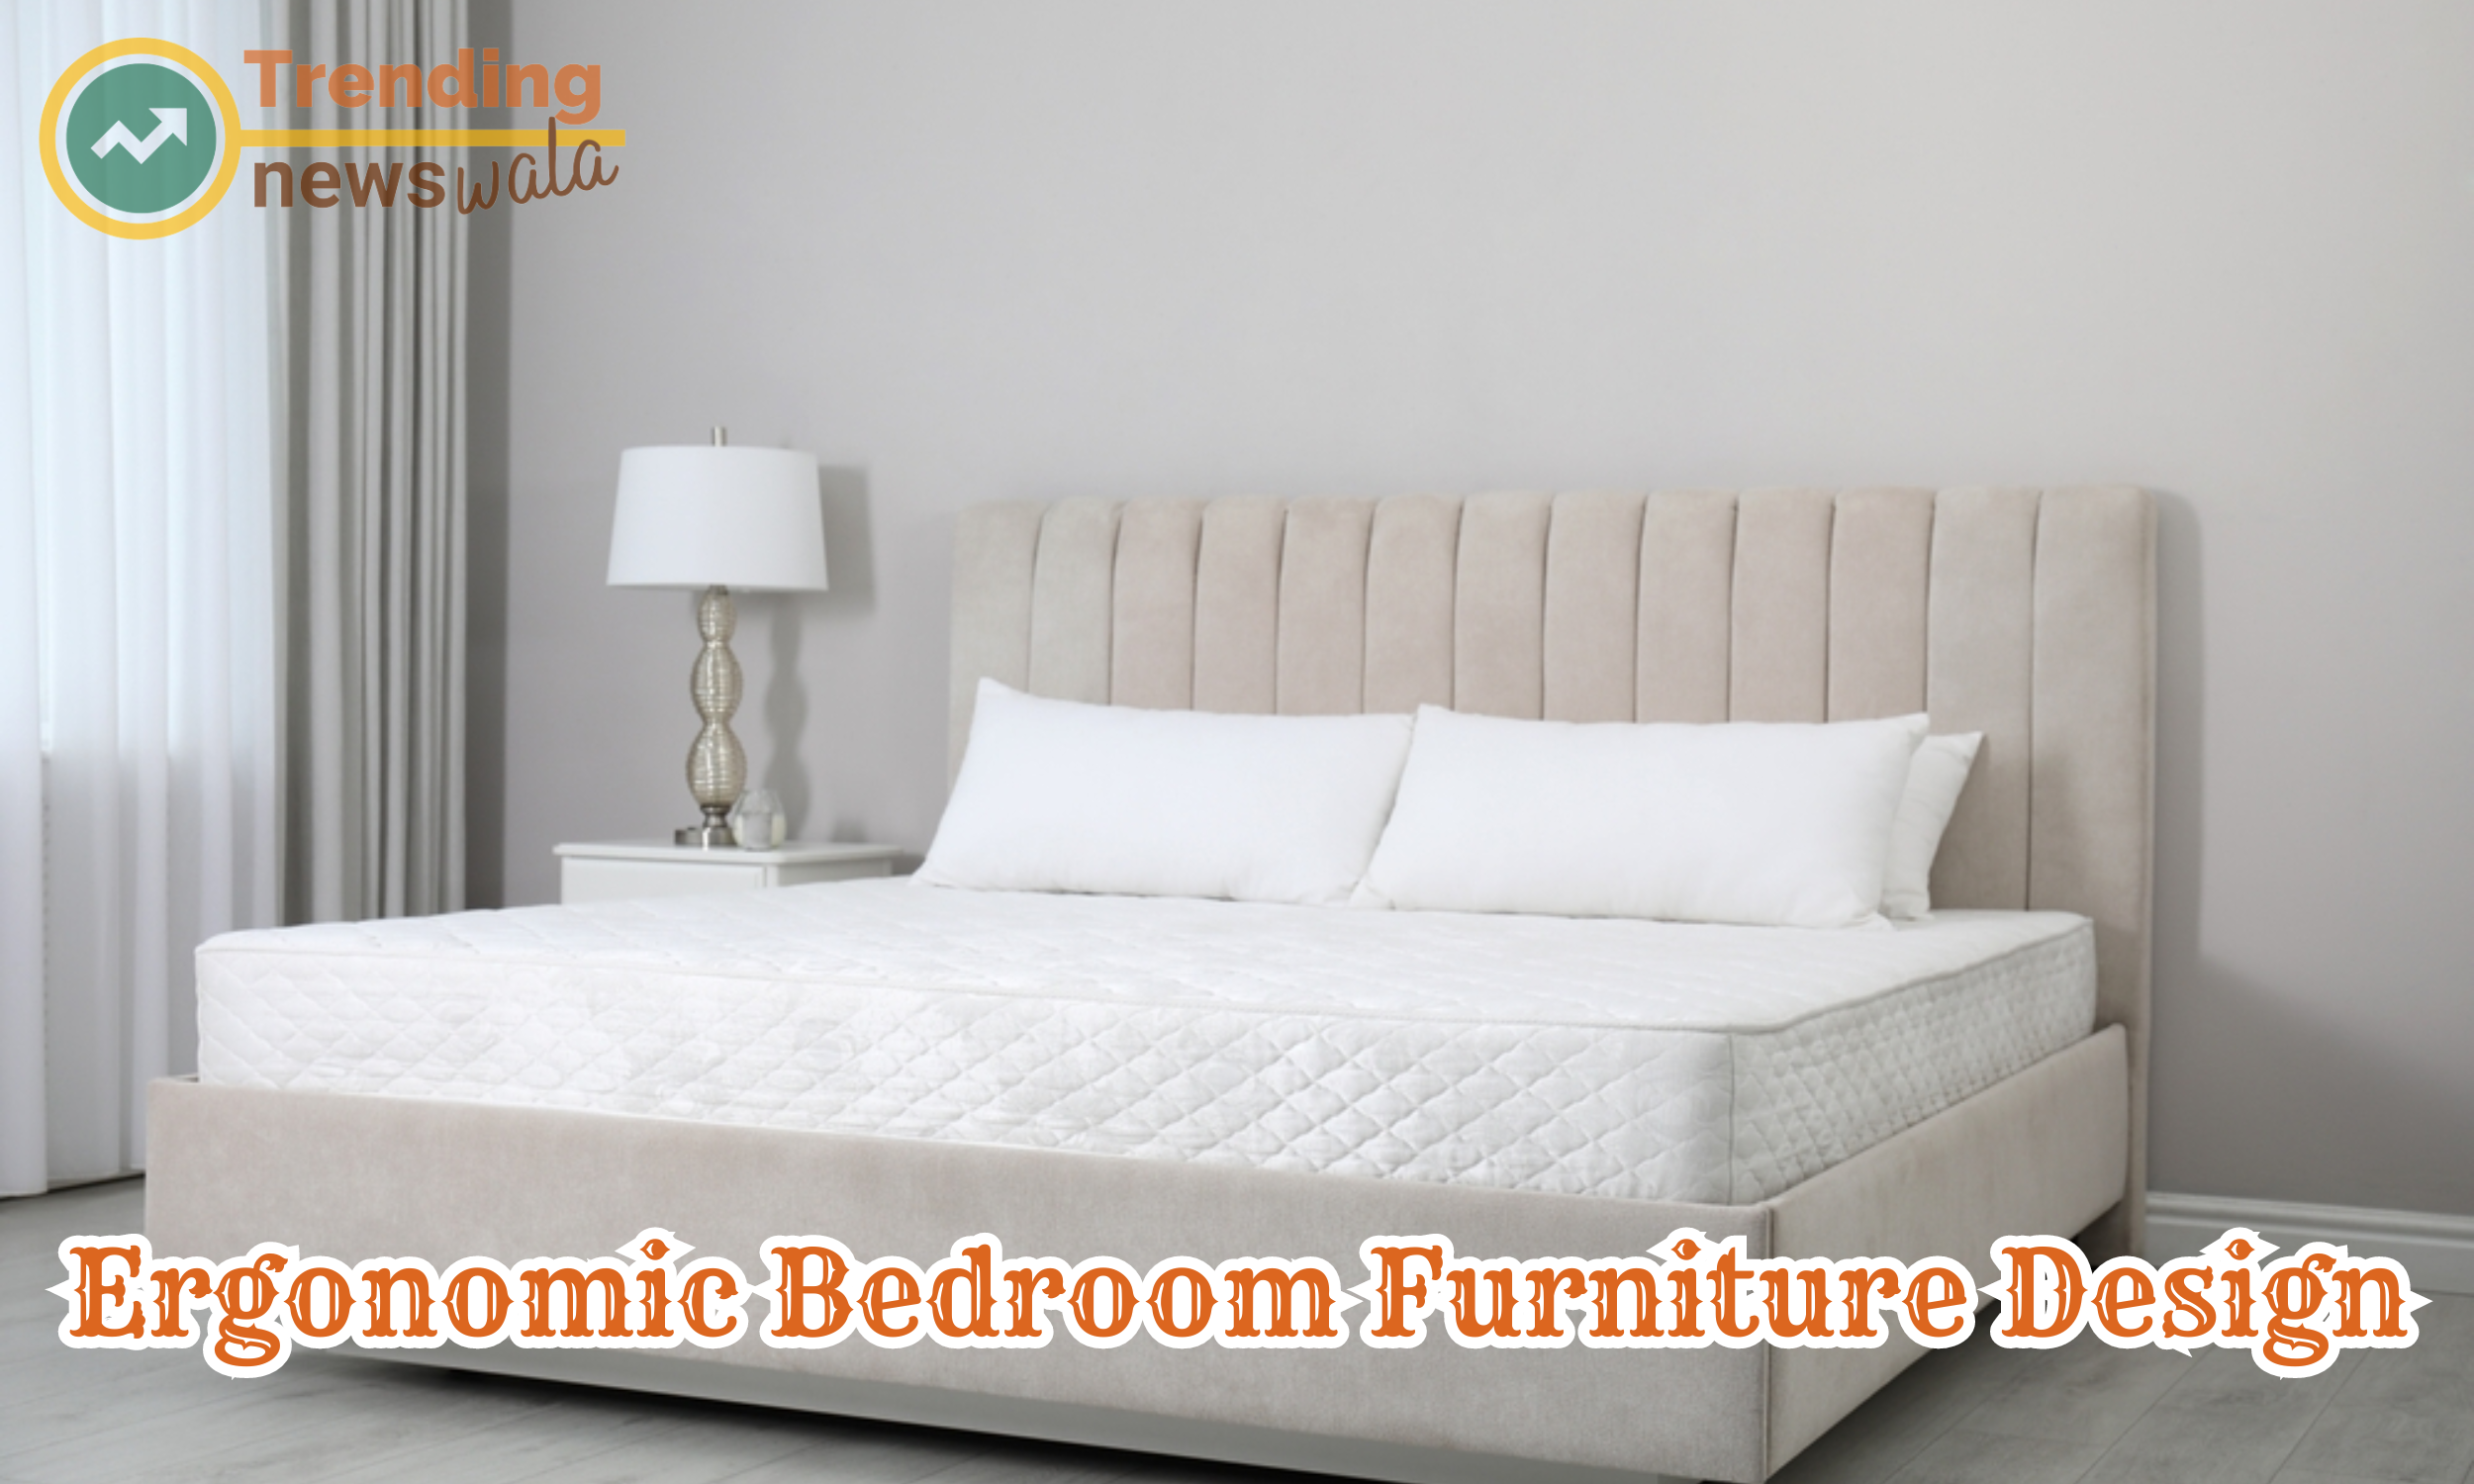 Ergonomic bedroom furniture design focuses on creating furniture